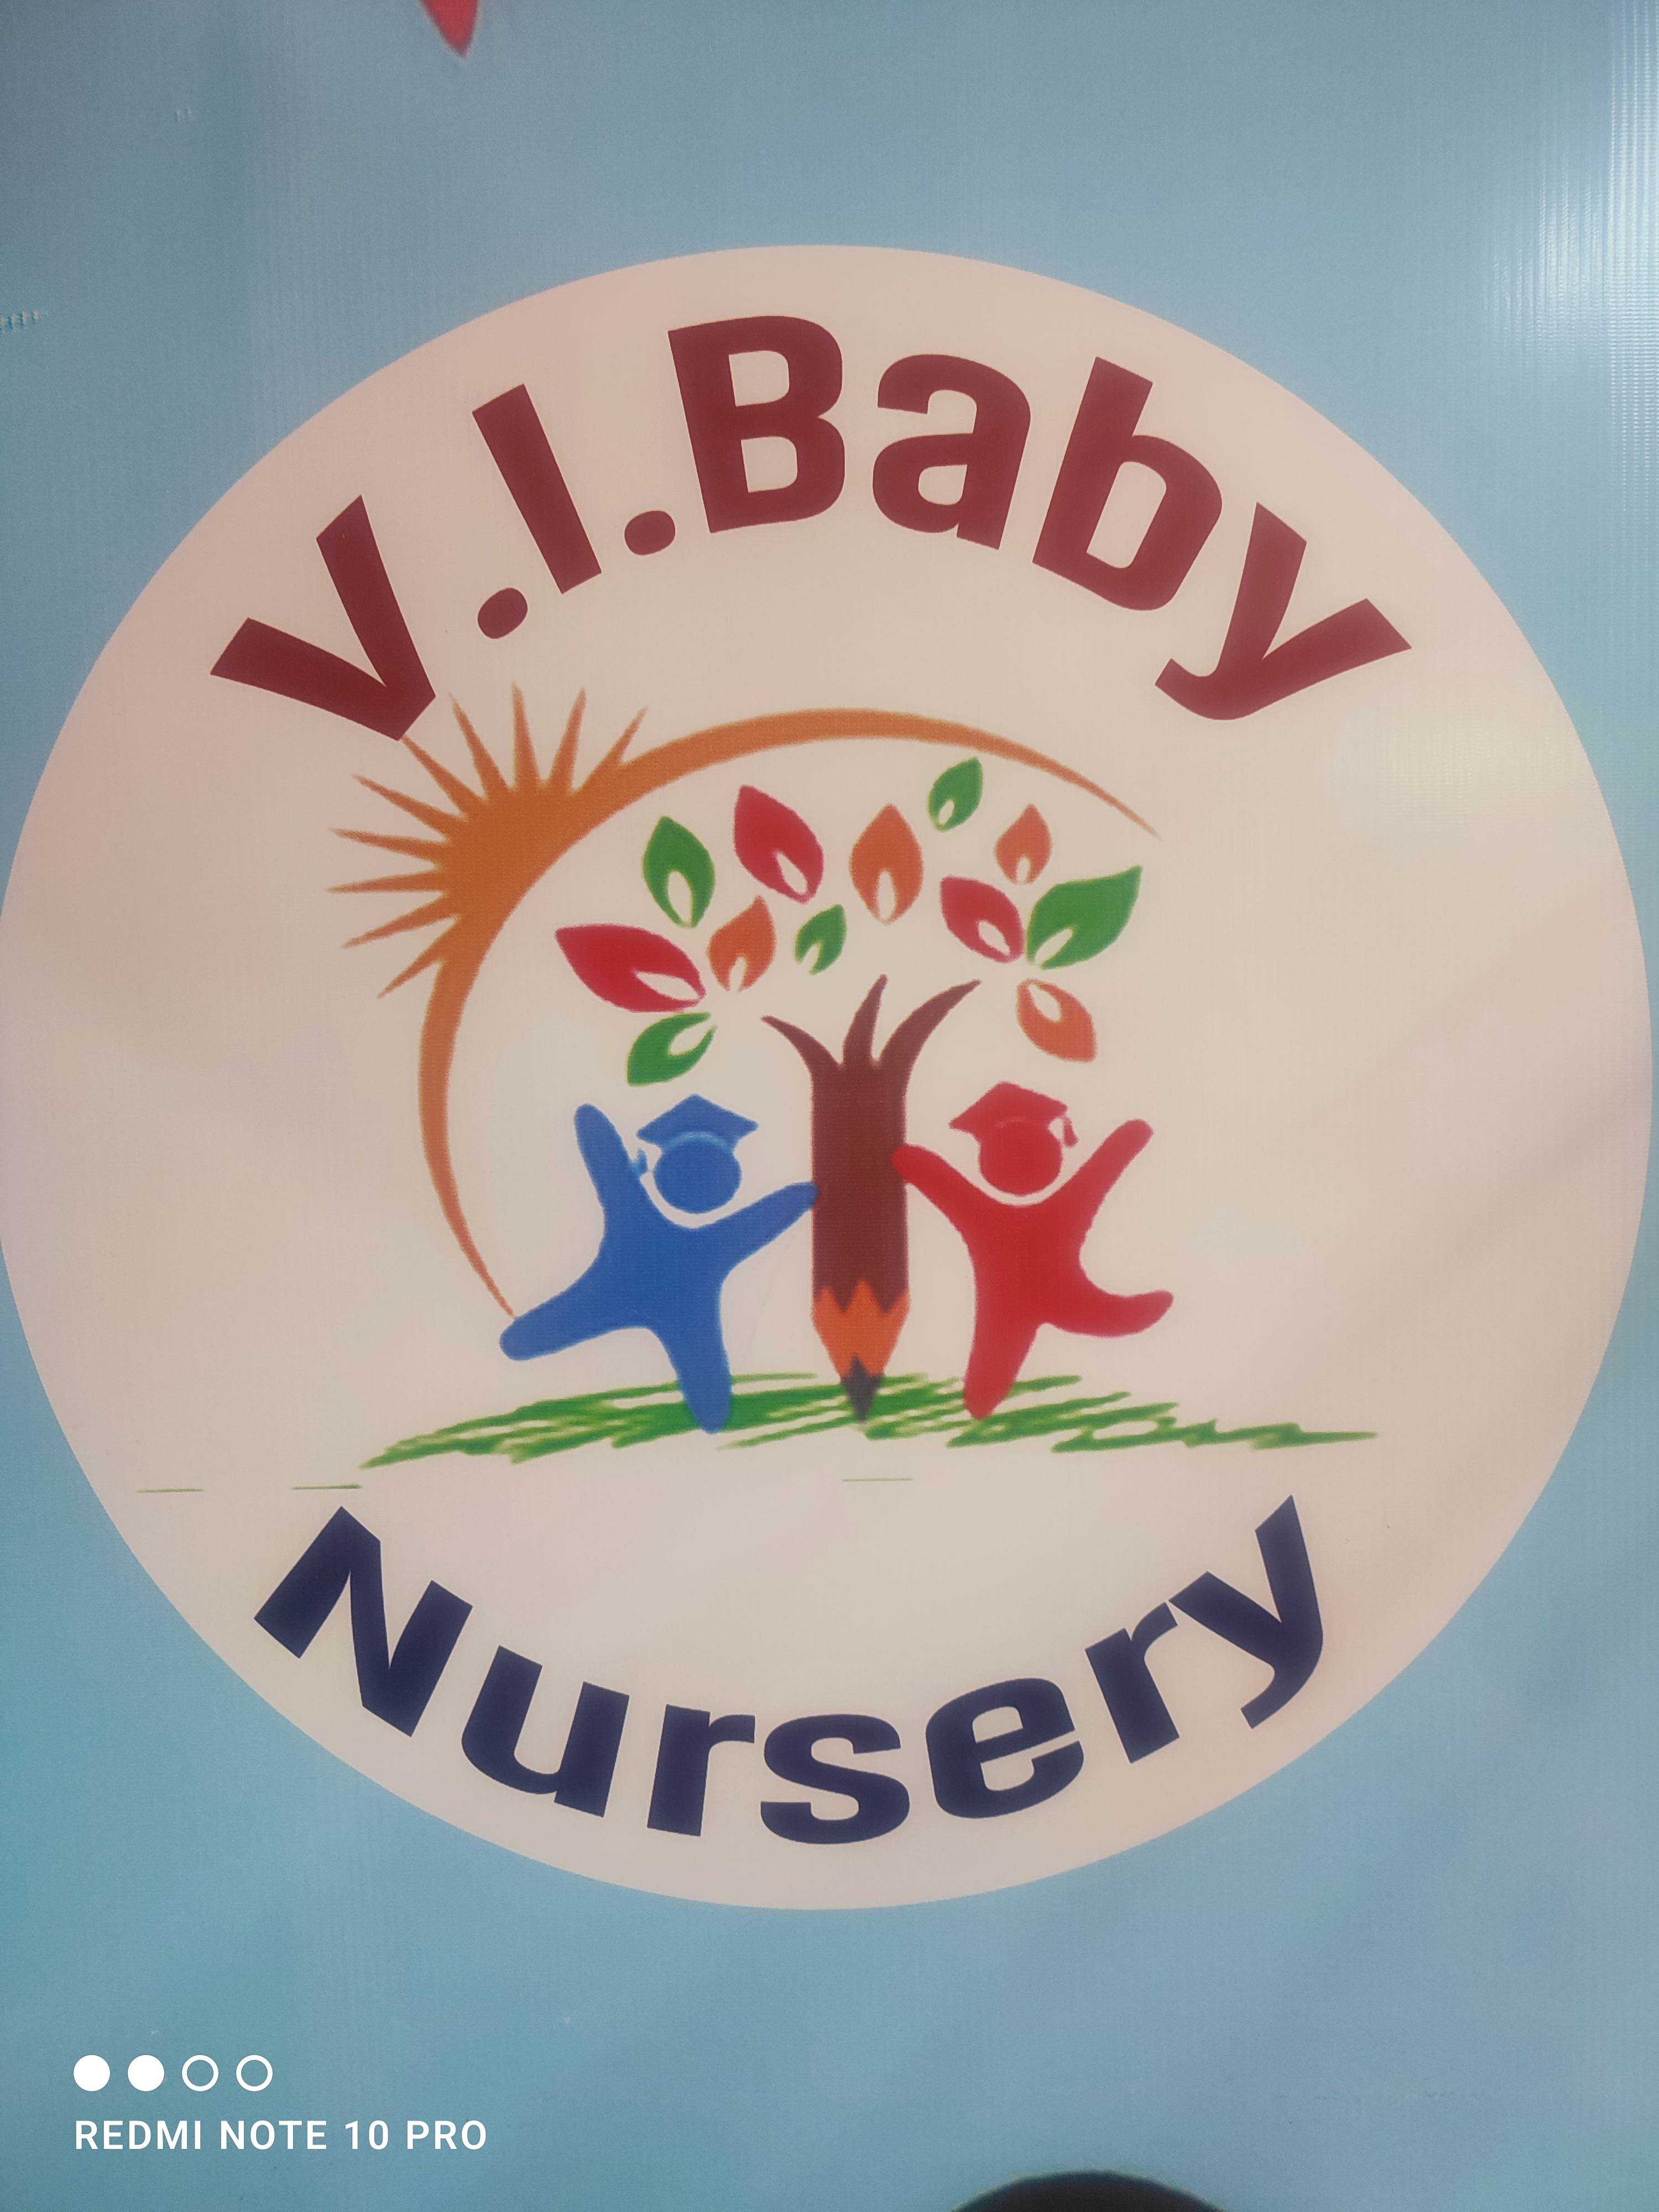 V. I. Baby Nursery